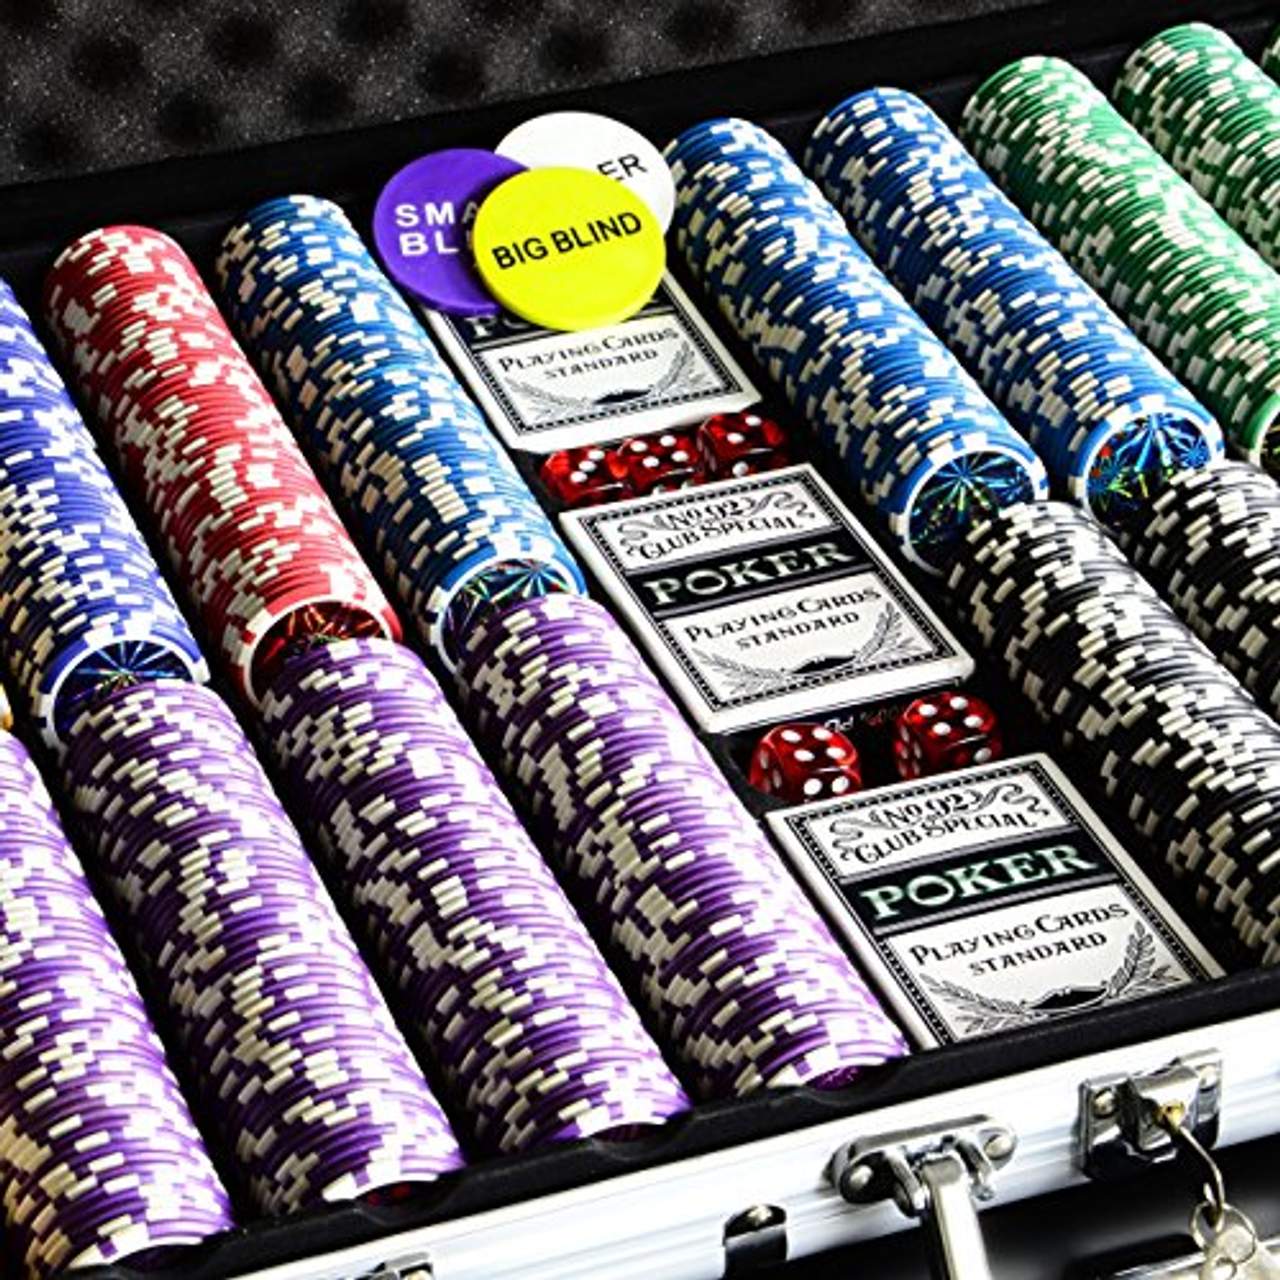 Pokerkoffer 1000 abgerundete Ocean Champion Chips hochwertige